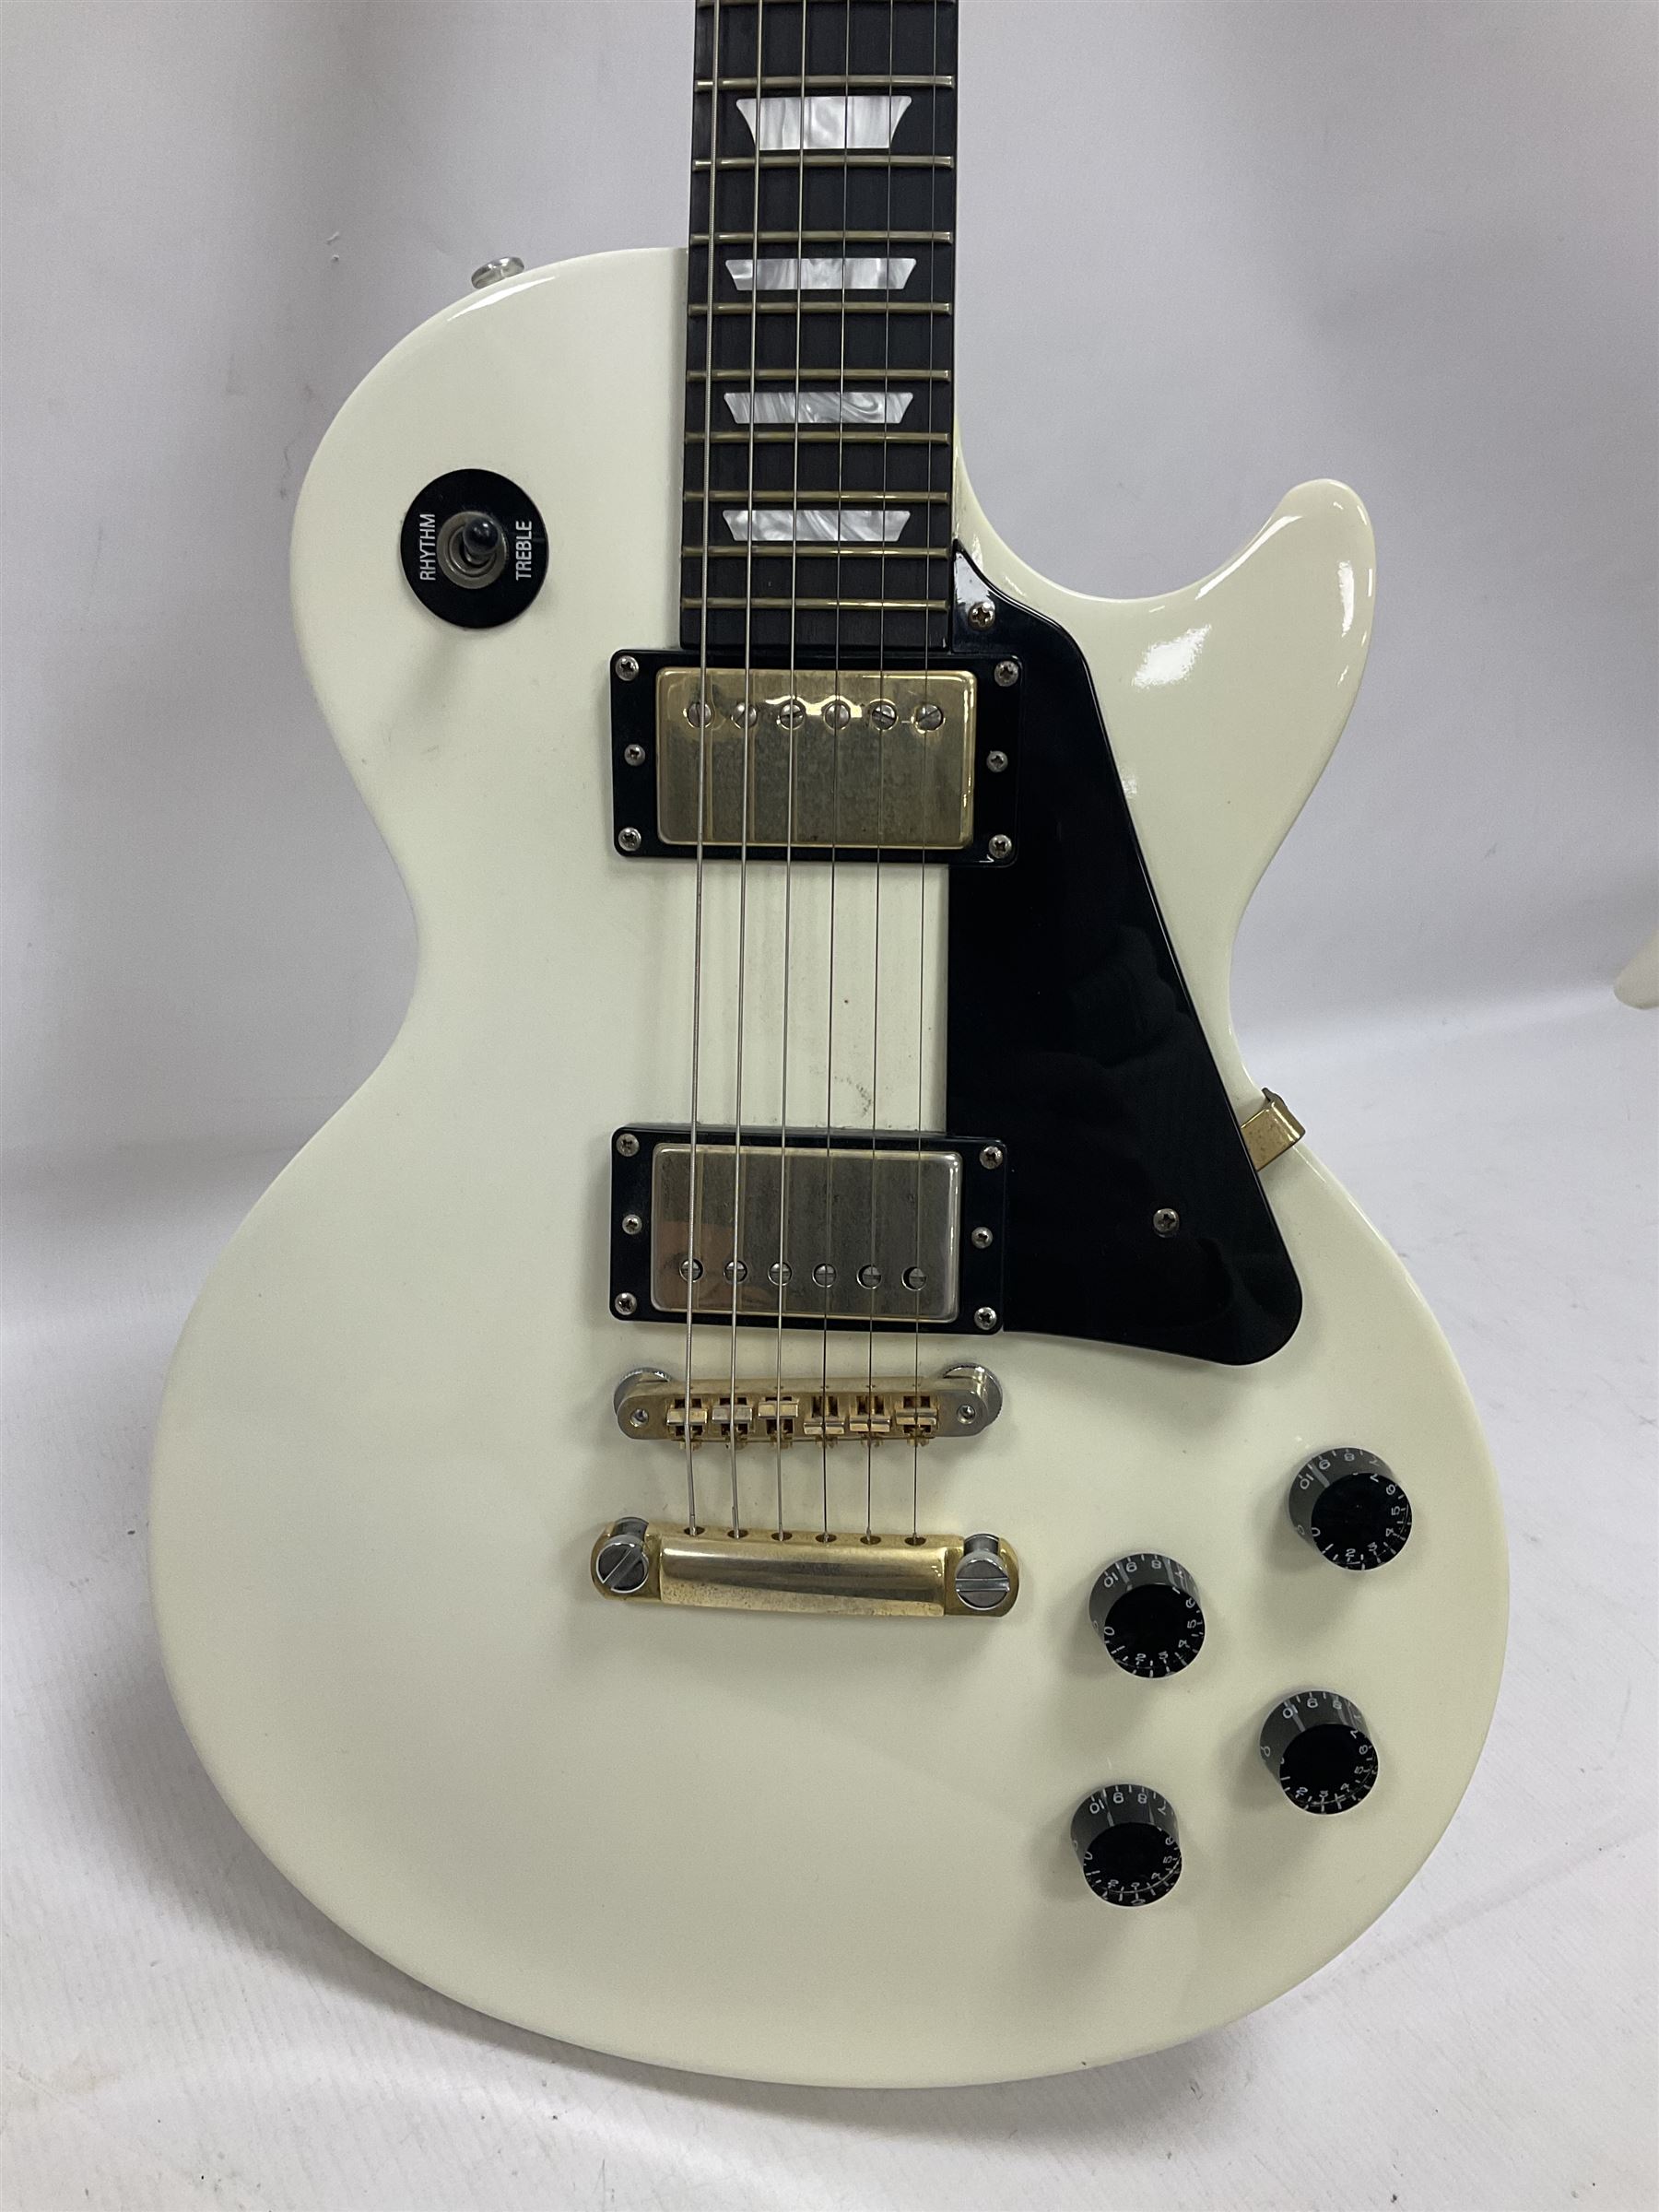 2010 Gibson Les Paul studio guitar - Image 3 of 24